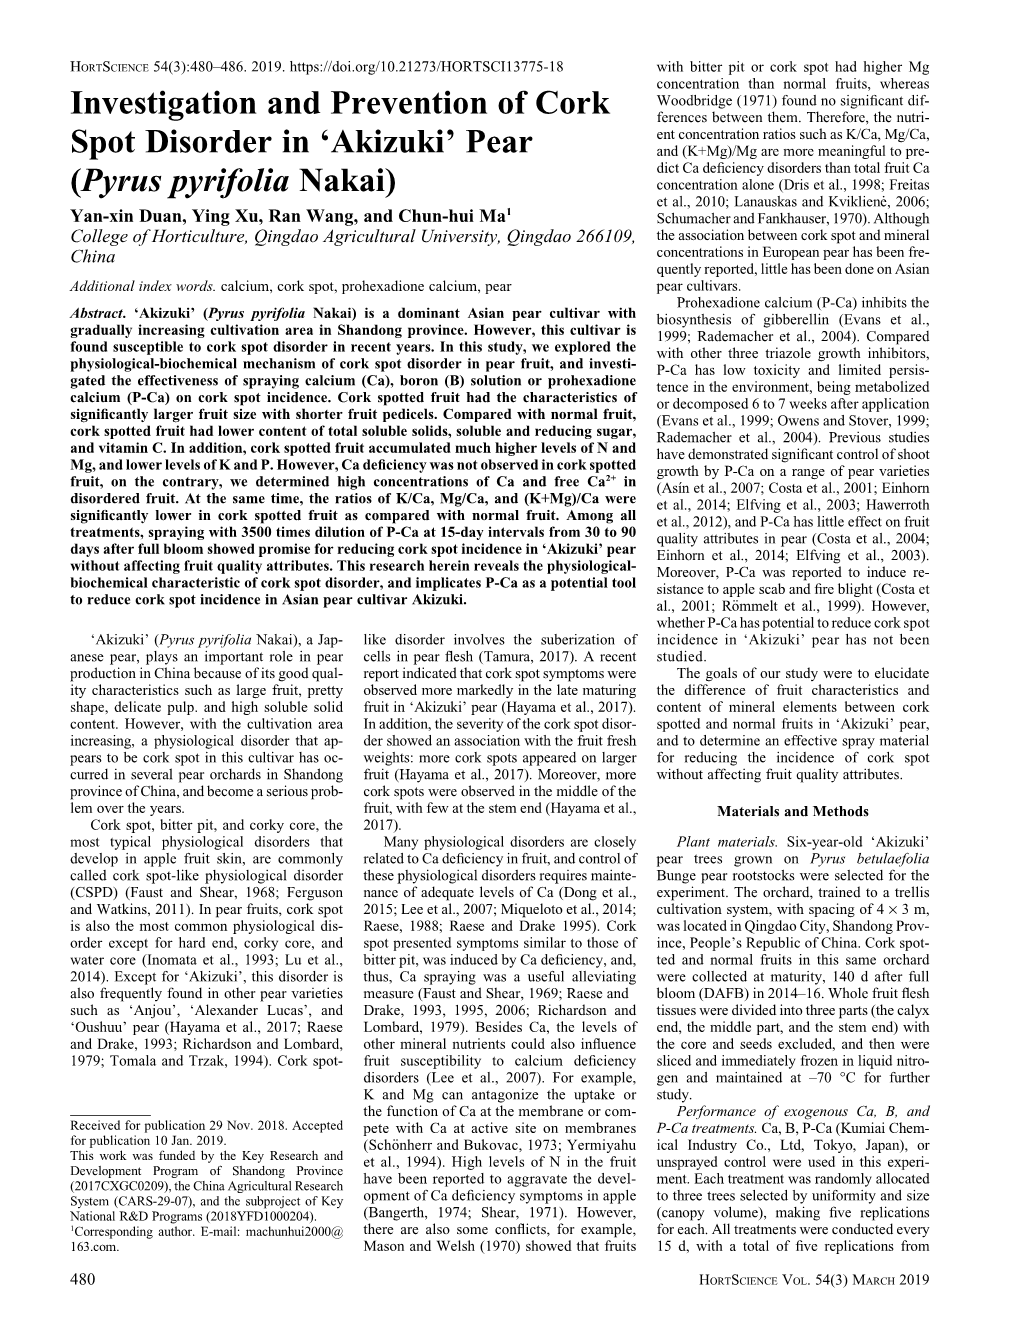 Investigation and Prevention of Cork Spot Disorder in 'Akizuki' Pear